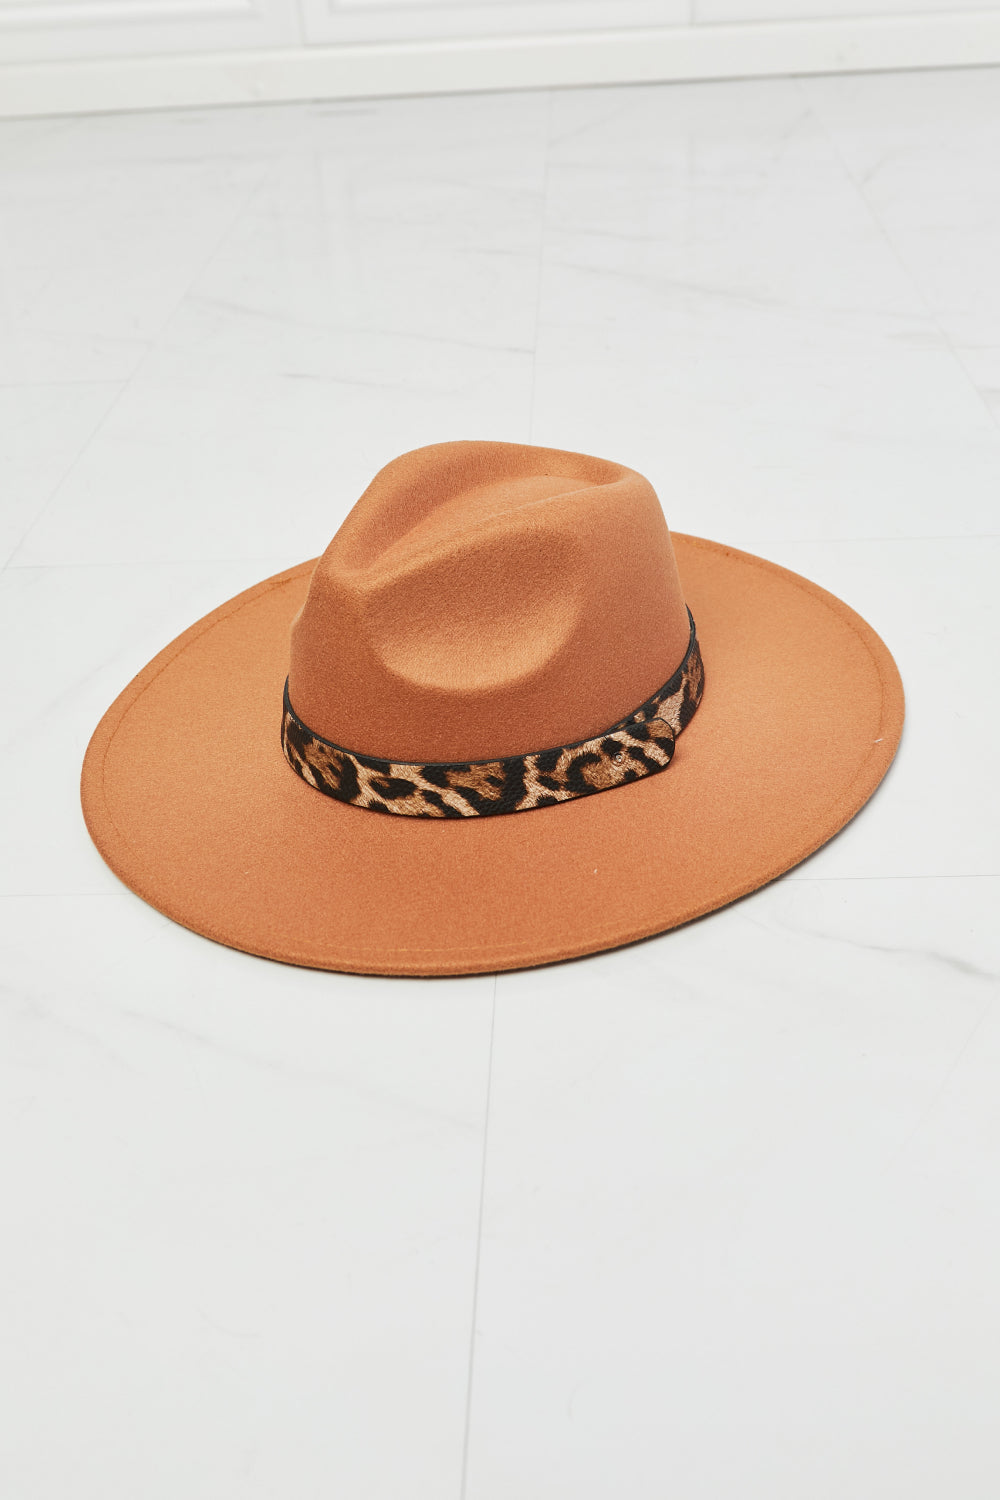 Fame In The Wild Leopard Detail Fedora Hat - TiffanyzKlozet